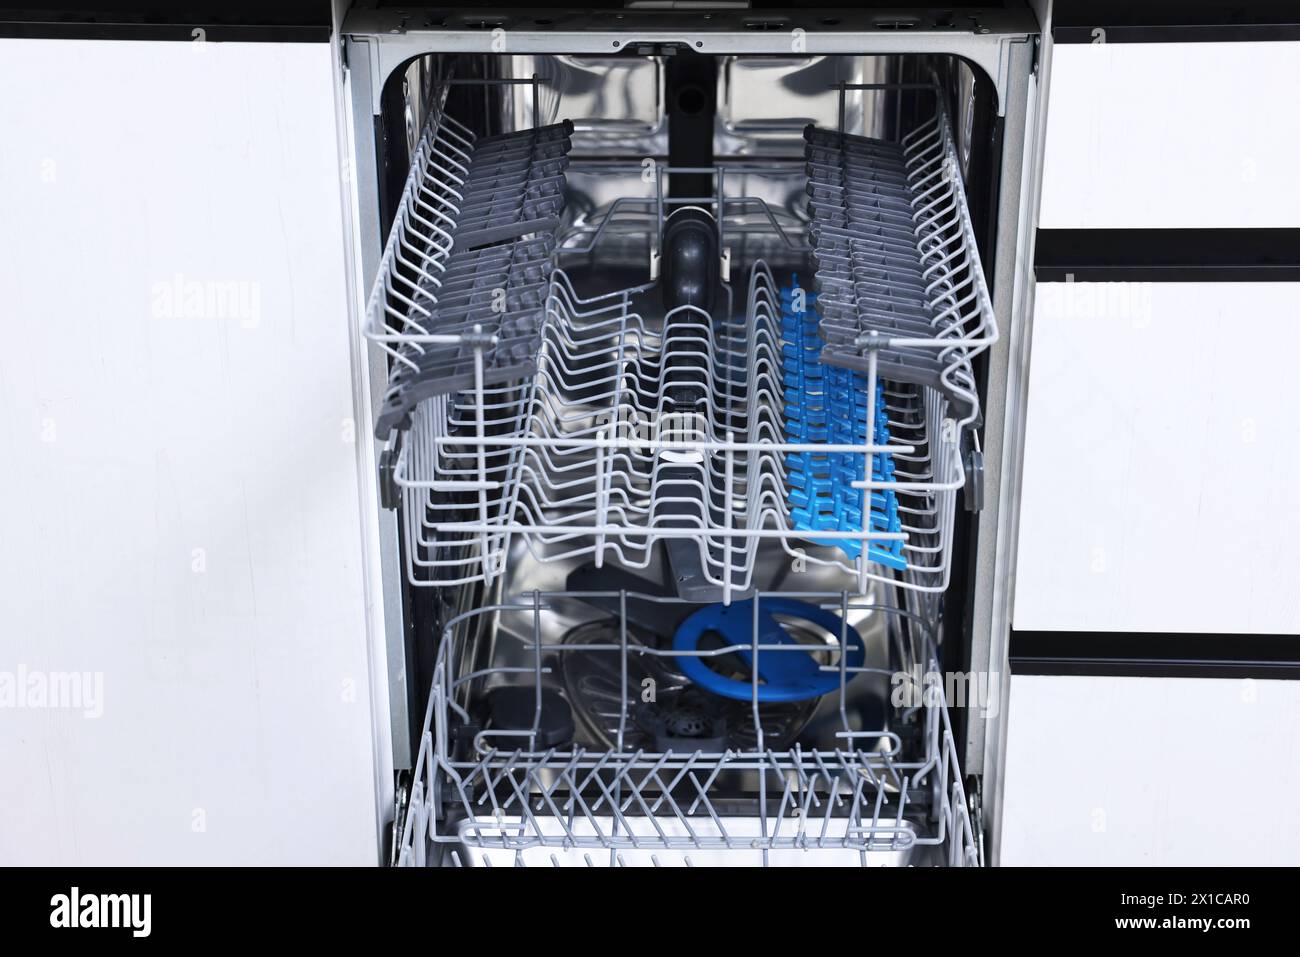 Ouvrez le lave-vaisselle vide propre à l'intérieur. Appareil électroménager Banque D'Images